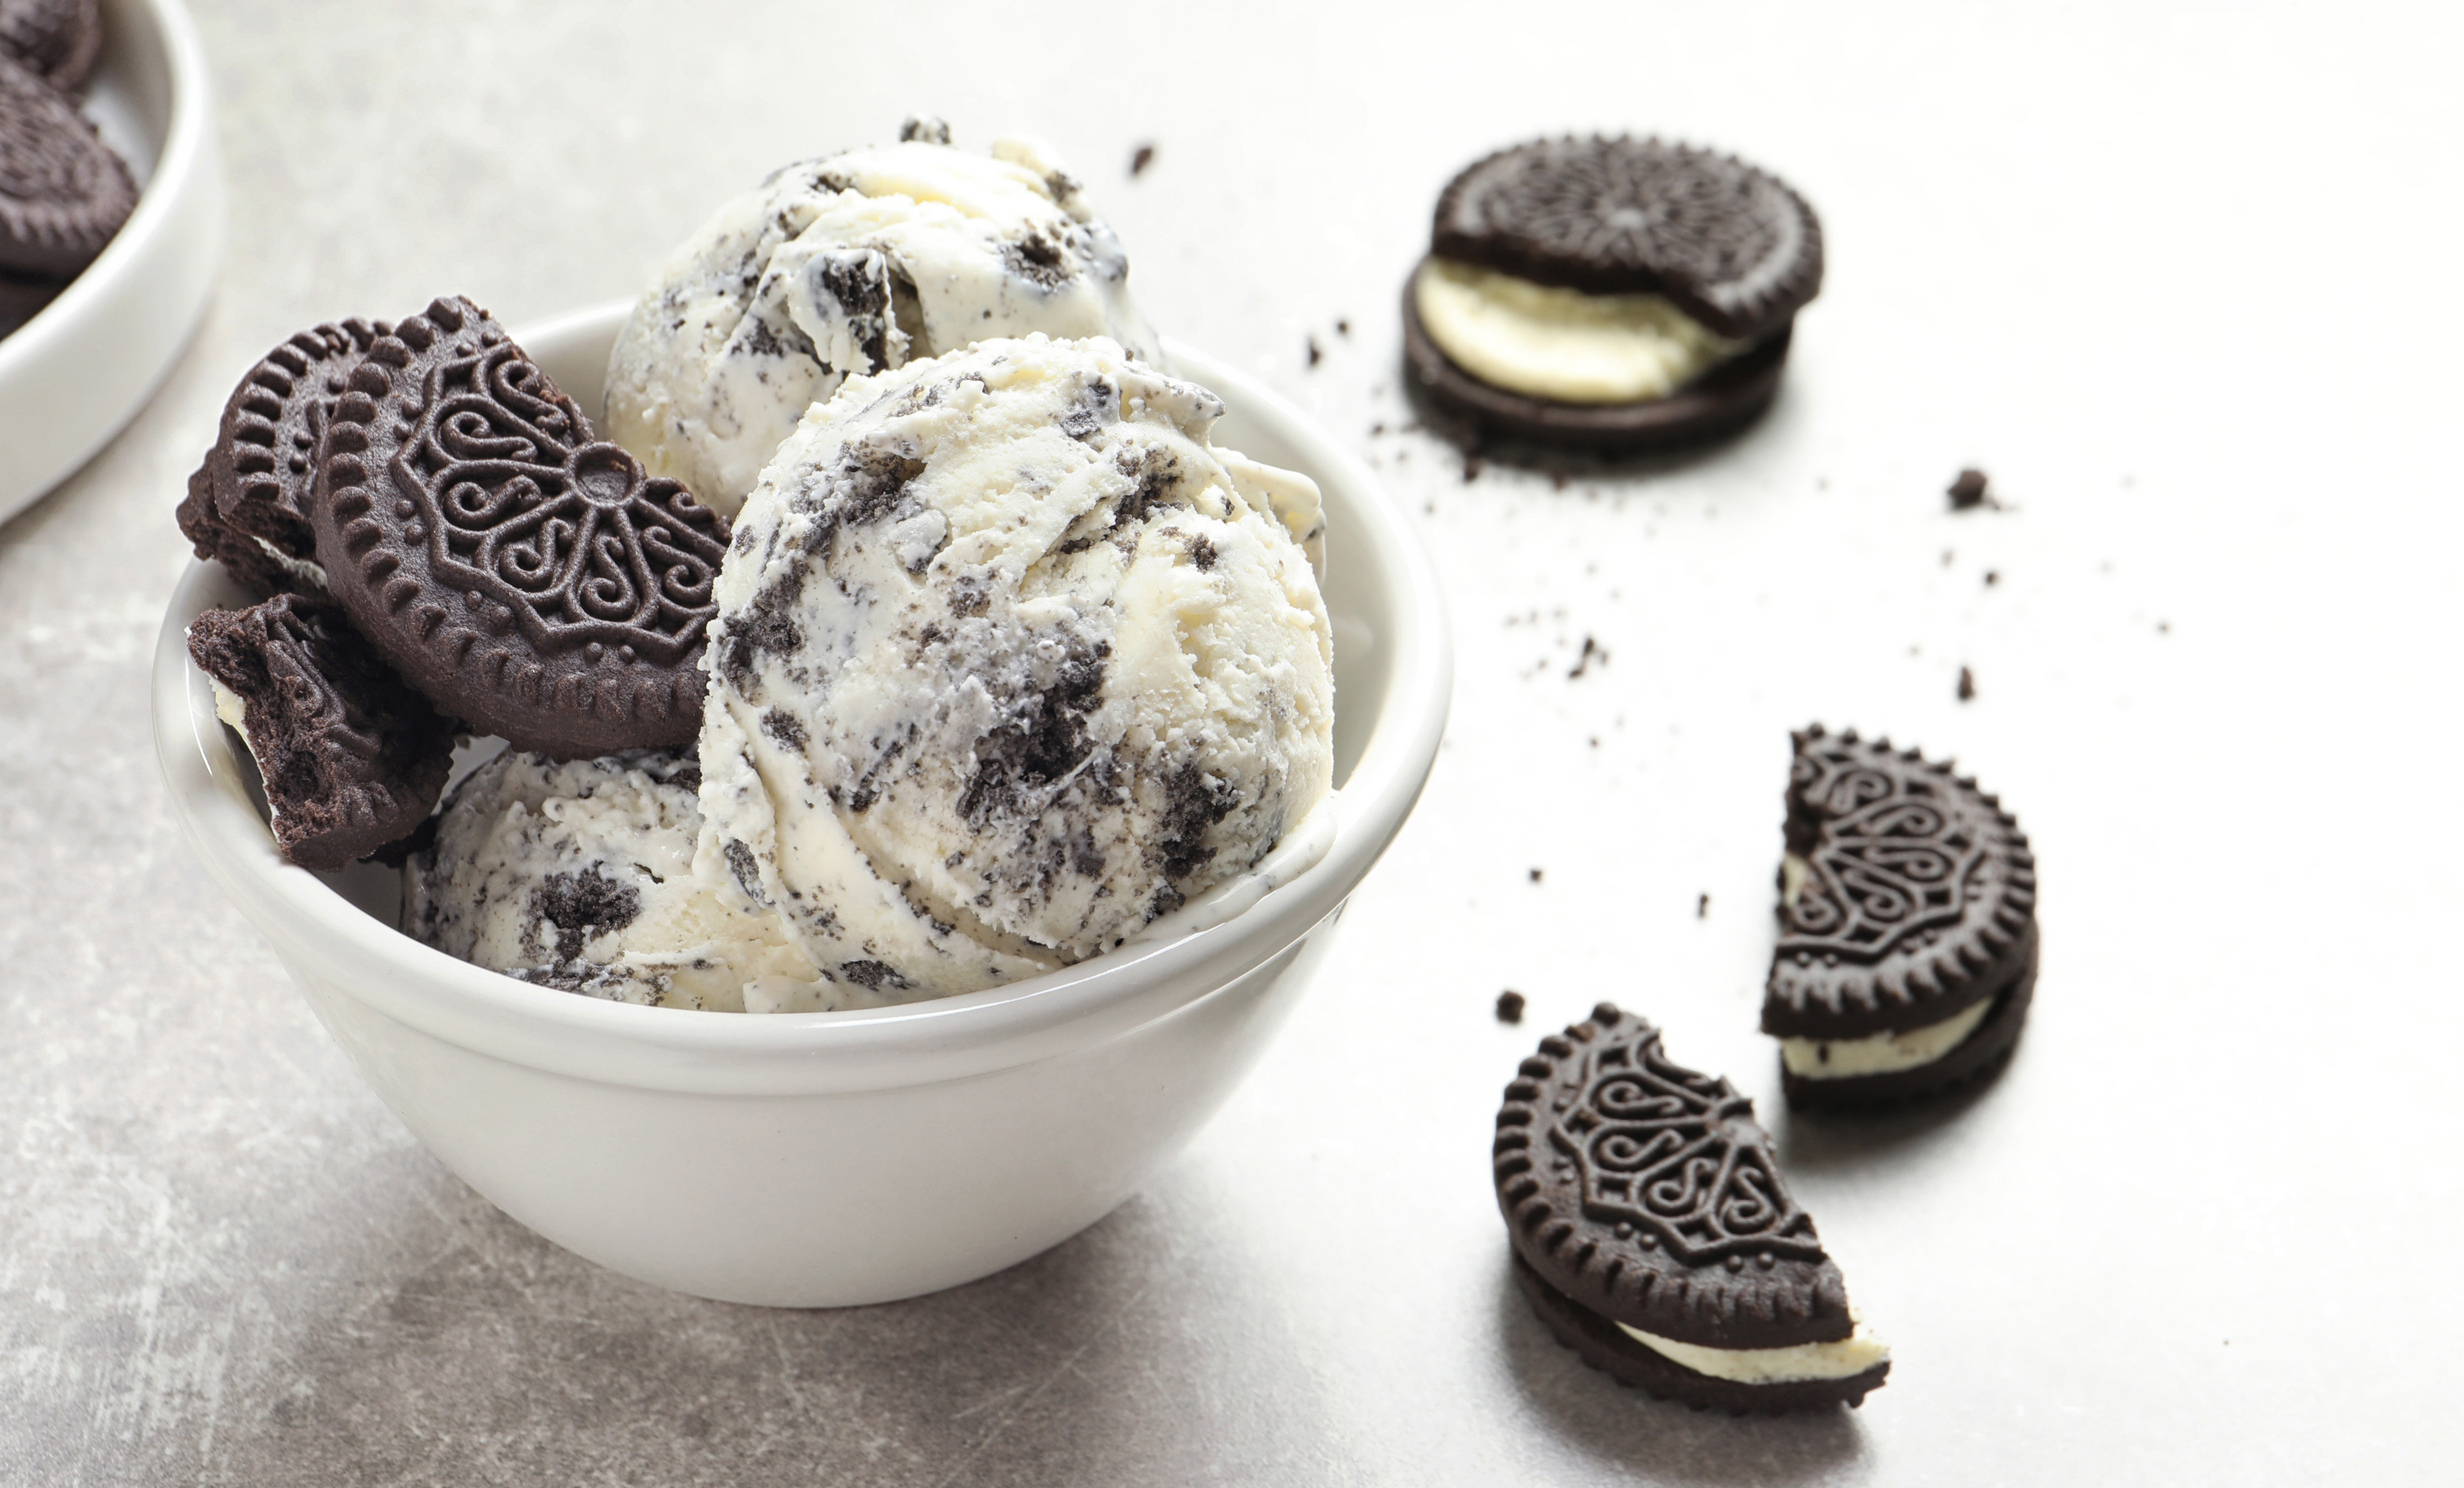 https://prod-app.breville.com/original/recipe/1652073819/Cookies+And+Cream+Ice+Cream_1.jpg